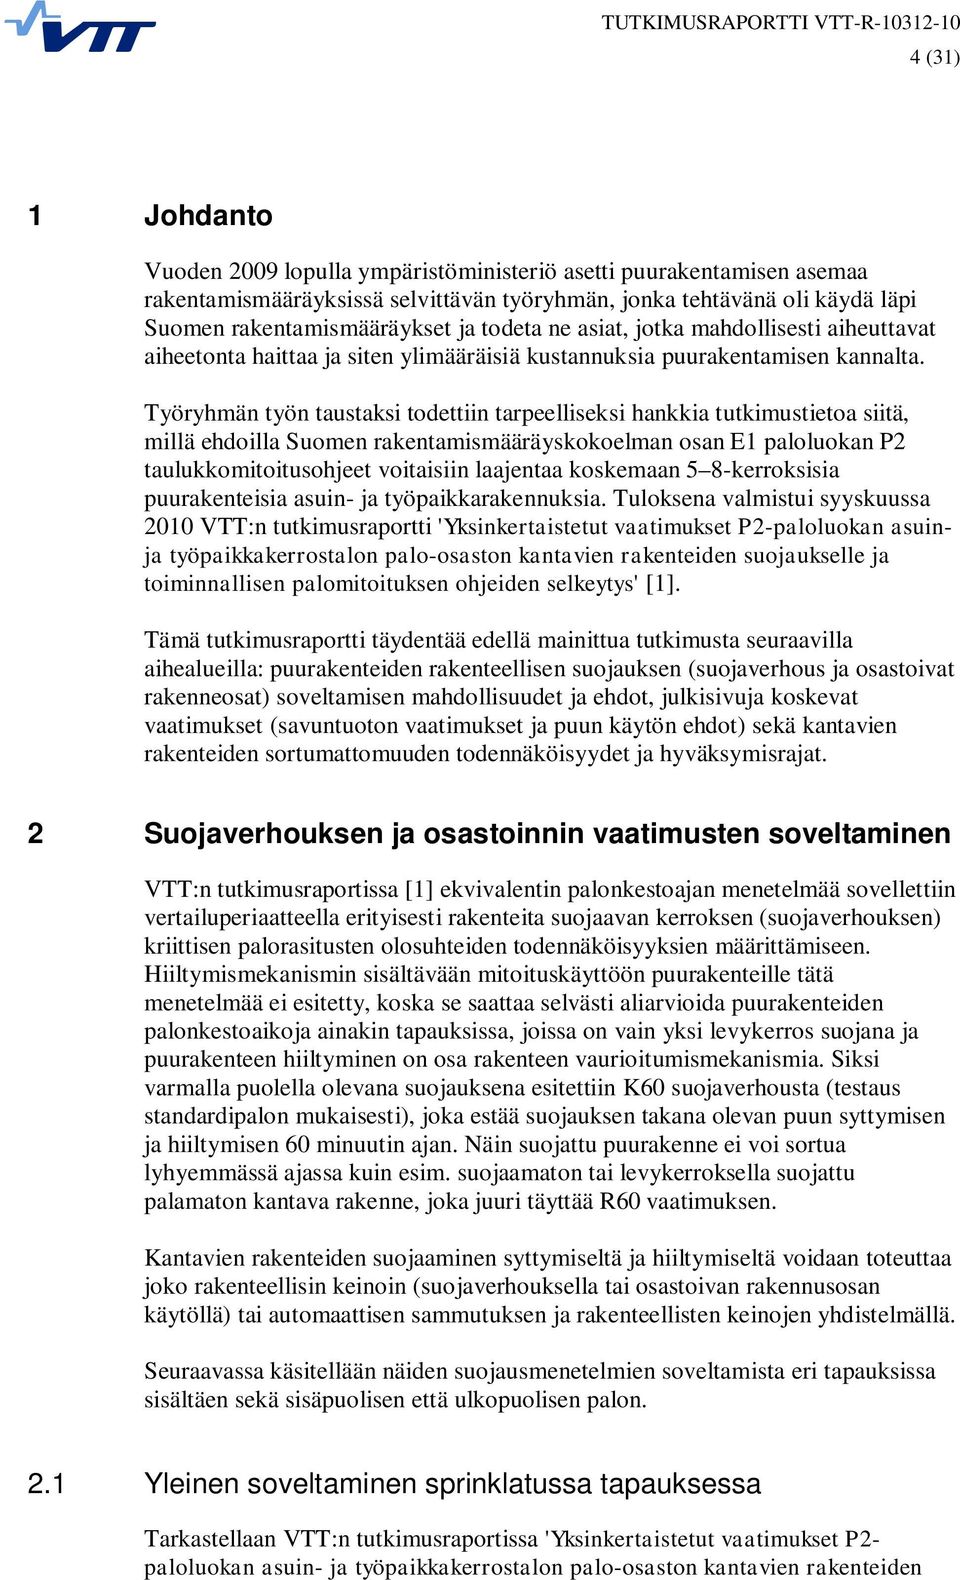 Työryhmän työn taustaksi todettiin tarpeelliseksi hankkia tutkimustietoa siitä, millä ehdoilla Suomen rakentamismääräyskokoelman osan E1 paloluokan P2 taulukkomitoitusohjeet voitaisiin laajentaa